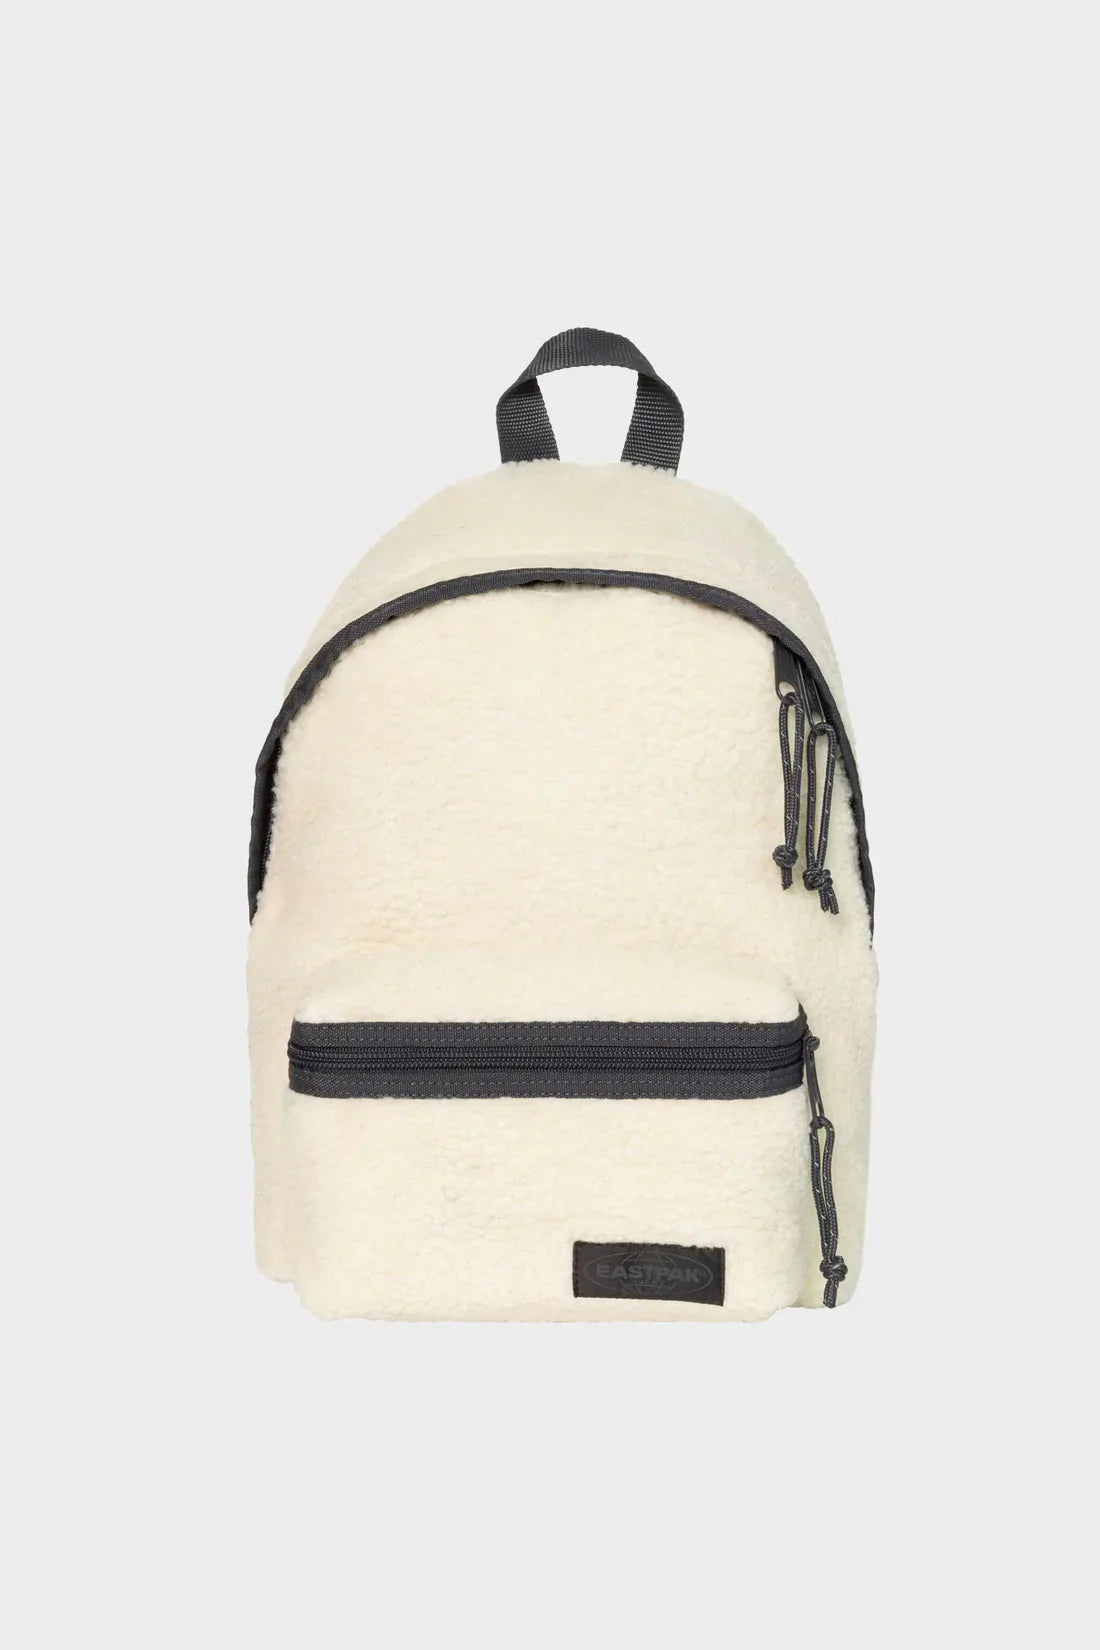 Likeur hebben zich vergist berouw hebben ORBIT XS Shearling mini backpack white | NEWBORN K